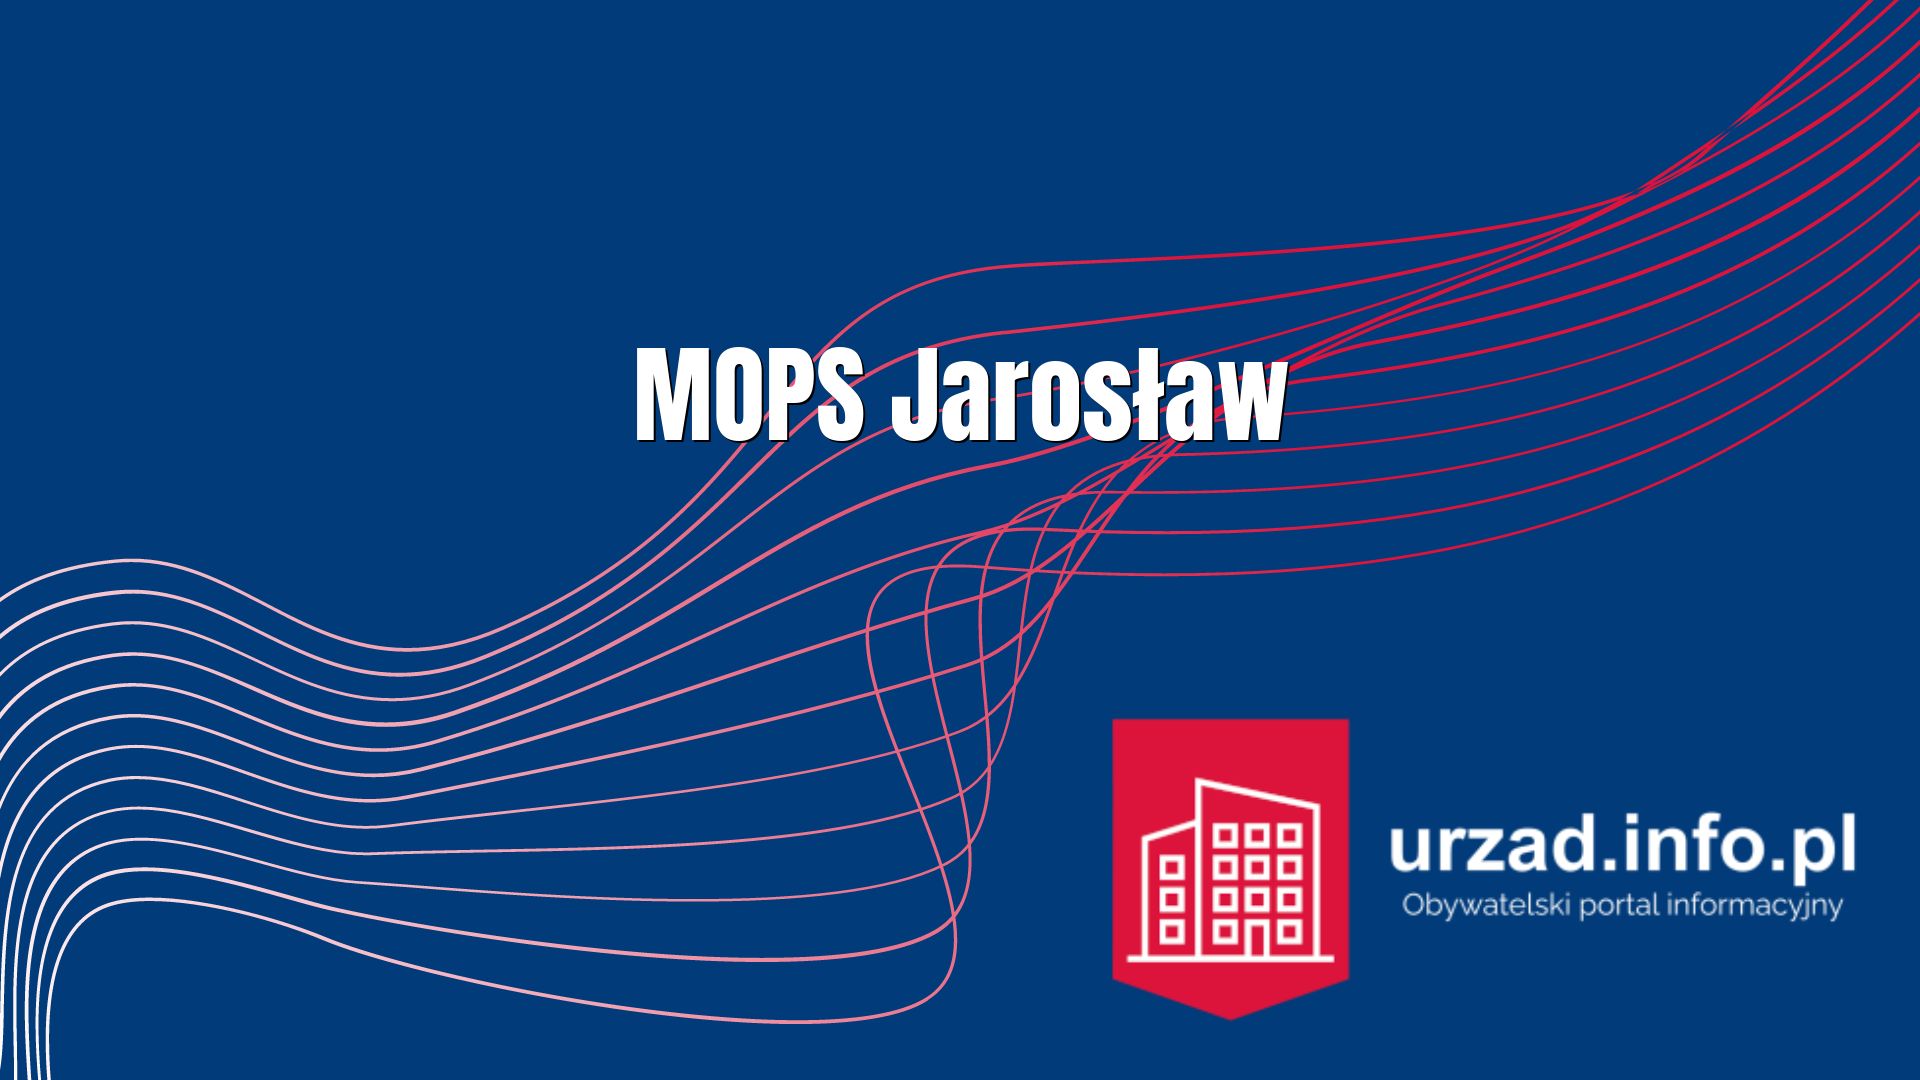 MOPS Jarosław – adres, kontakt, zasiłki, wnioski, dodatki, praca